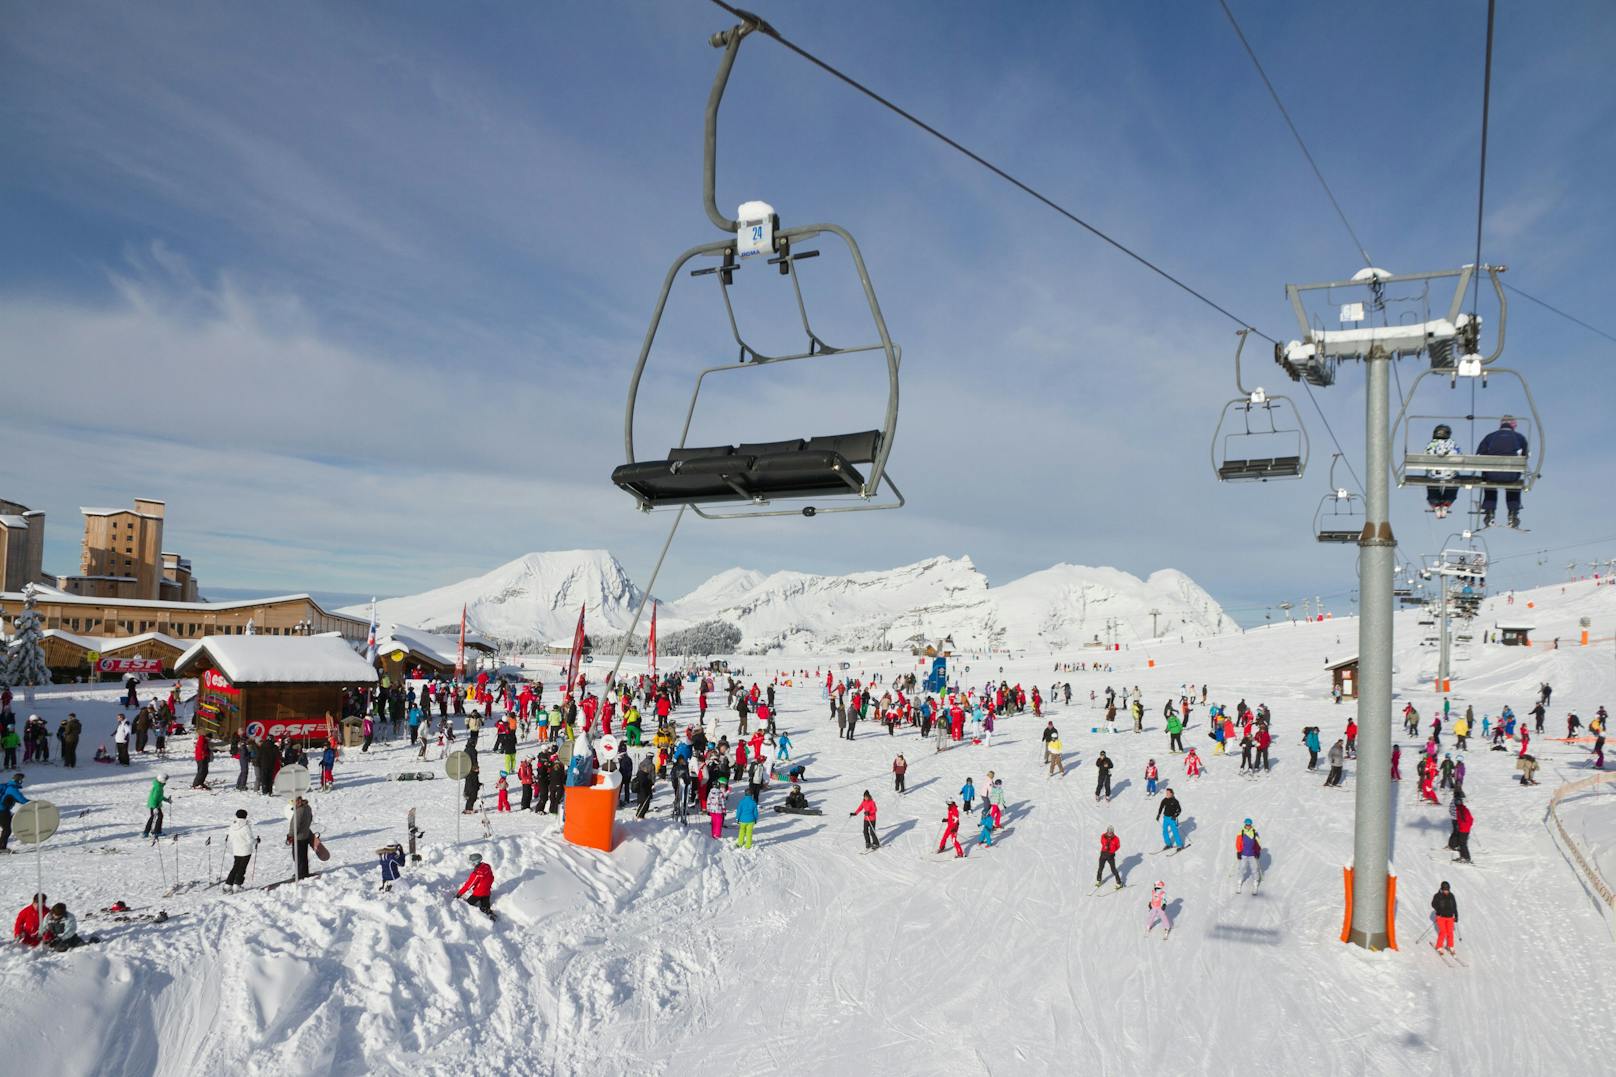 <strong>Platz 1: </strong>Das Skigebiet "Les Portes du Soleil" an der französisch-schweizerischen Grenze bietet laut der Rangliste das beste Preis-Leistungs-Verhältnis mit&nbsp;580 Pistenkilometern und einem Tageskartenpreis in der Hauptsaison um 59 Euro.